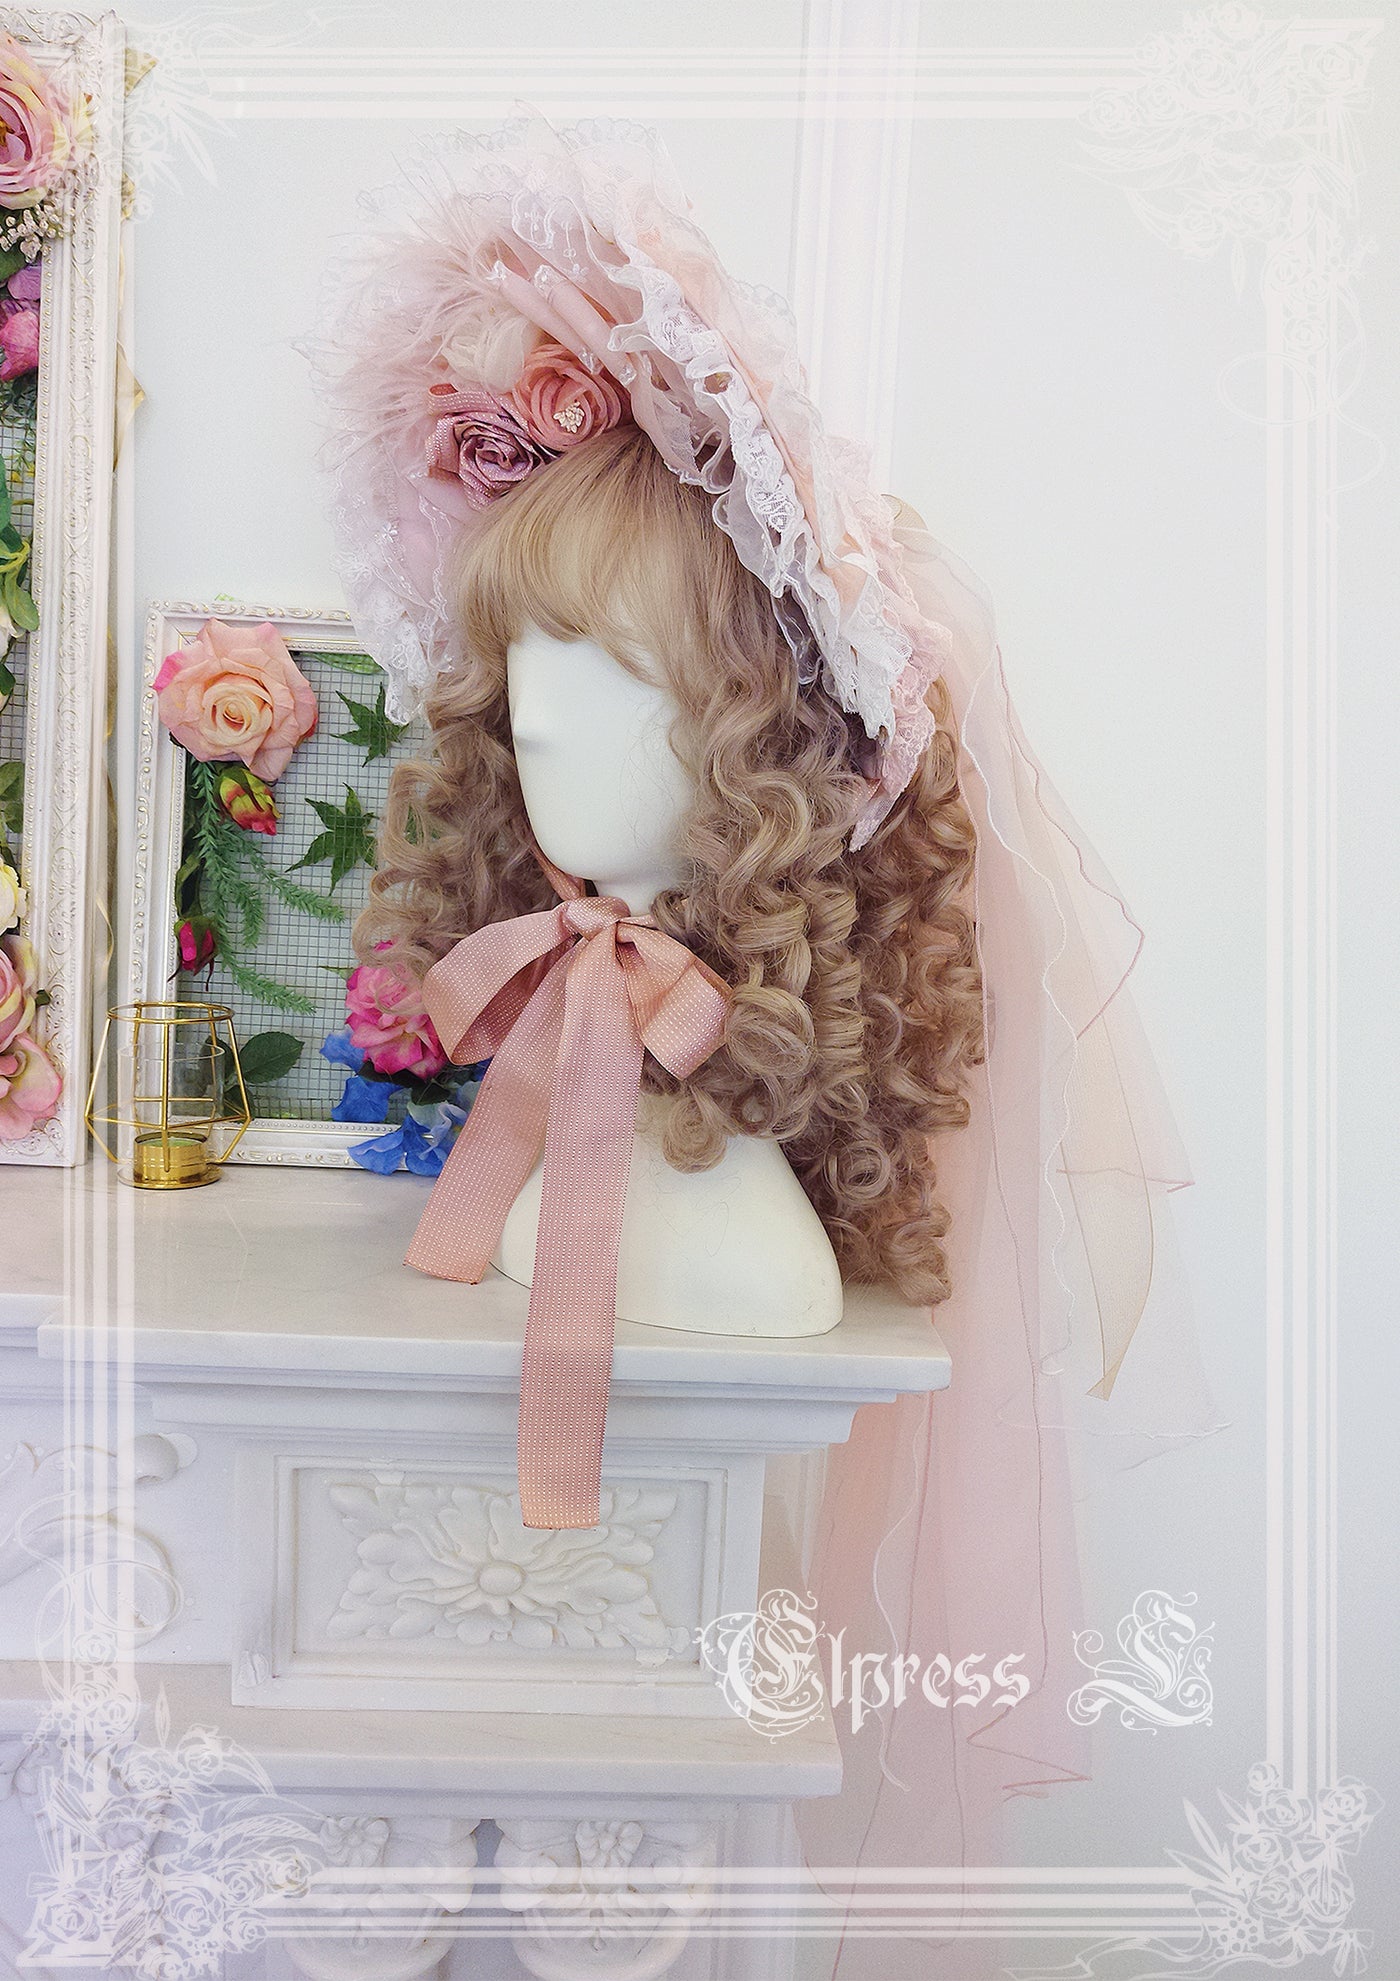 Elpress L~Christmas Flower Hairpins Lolita Mesh Veil KC Bonnet   